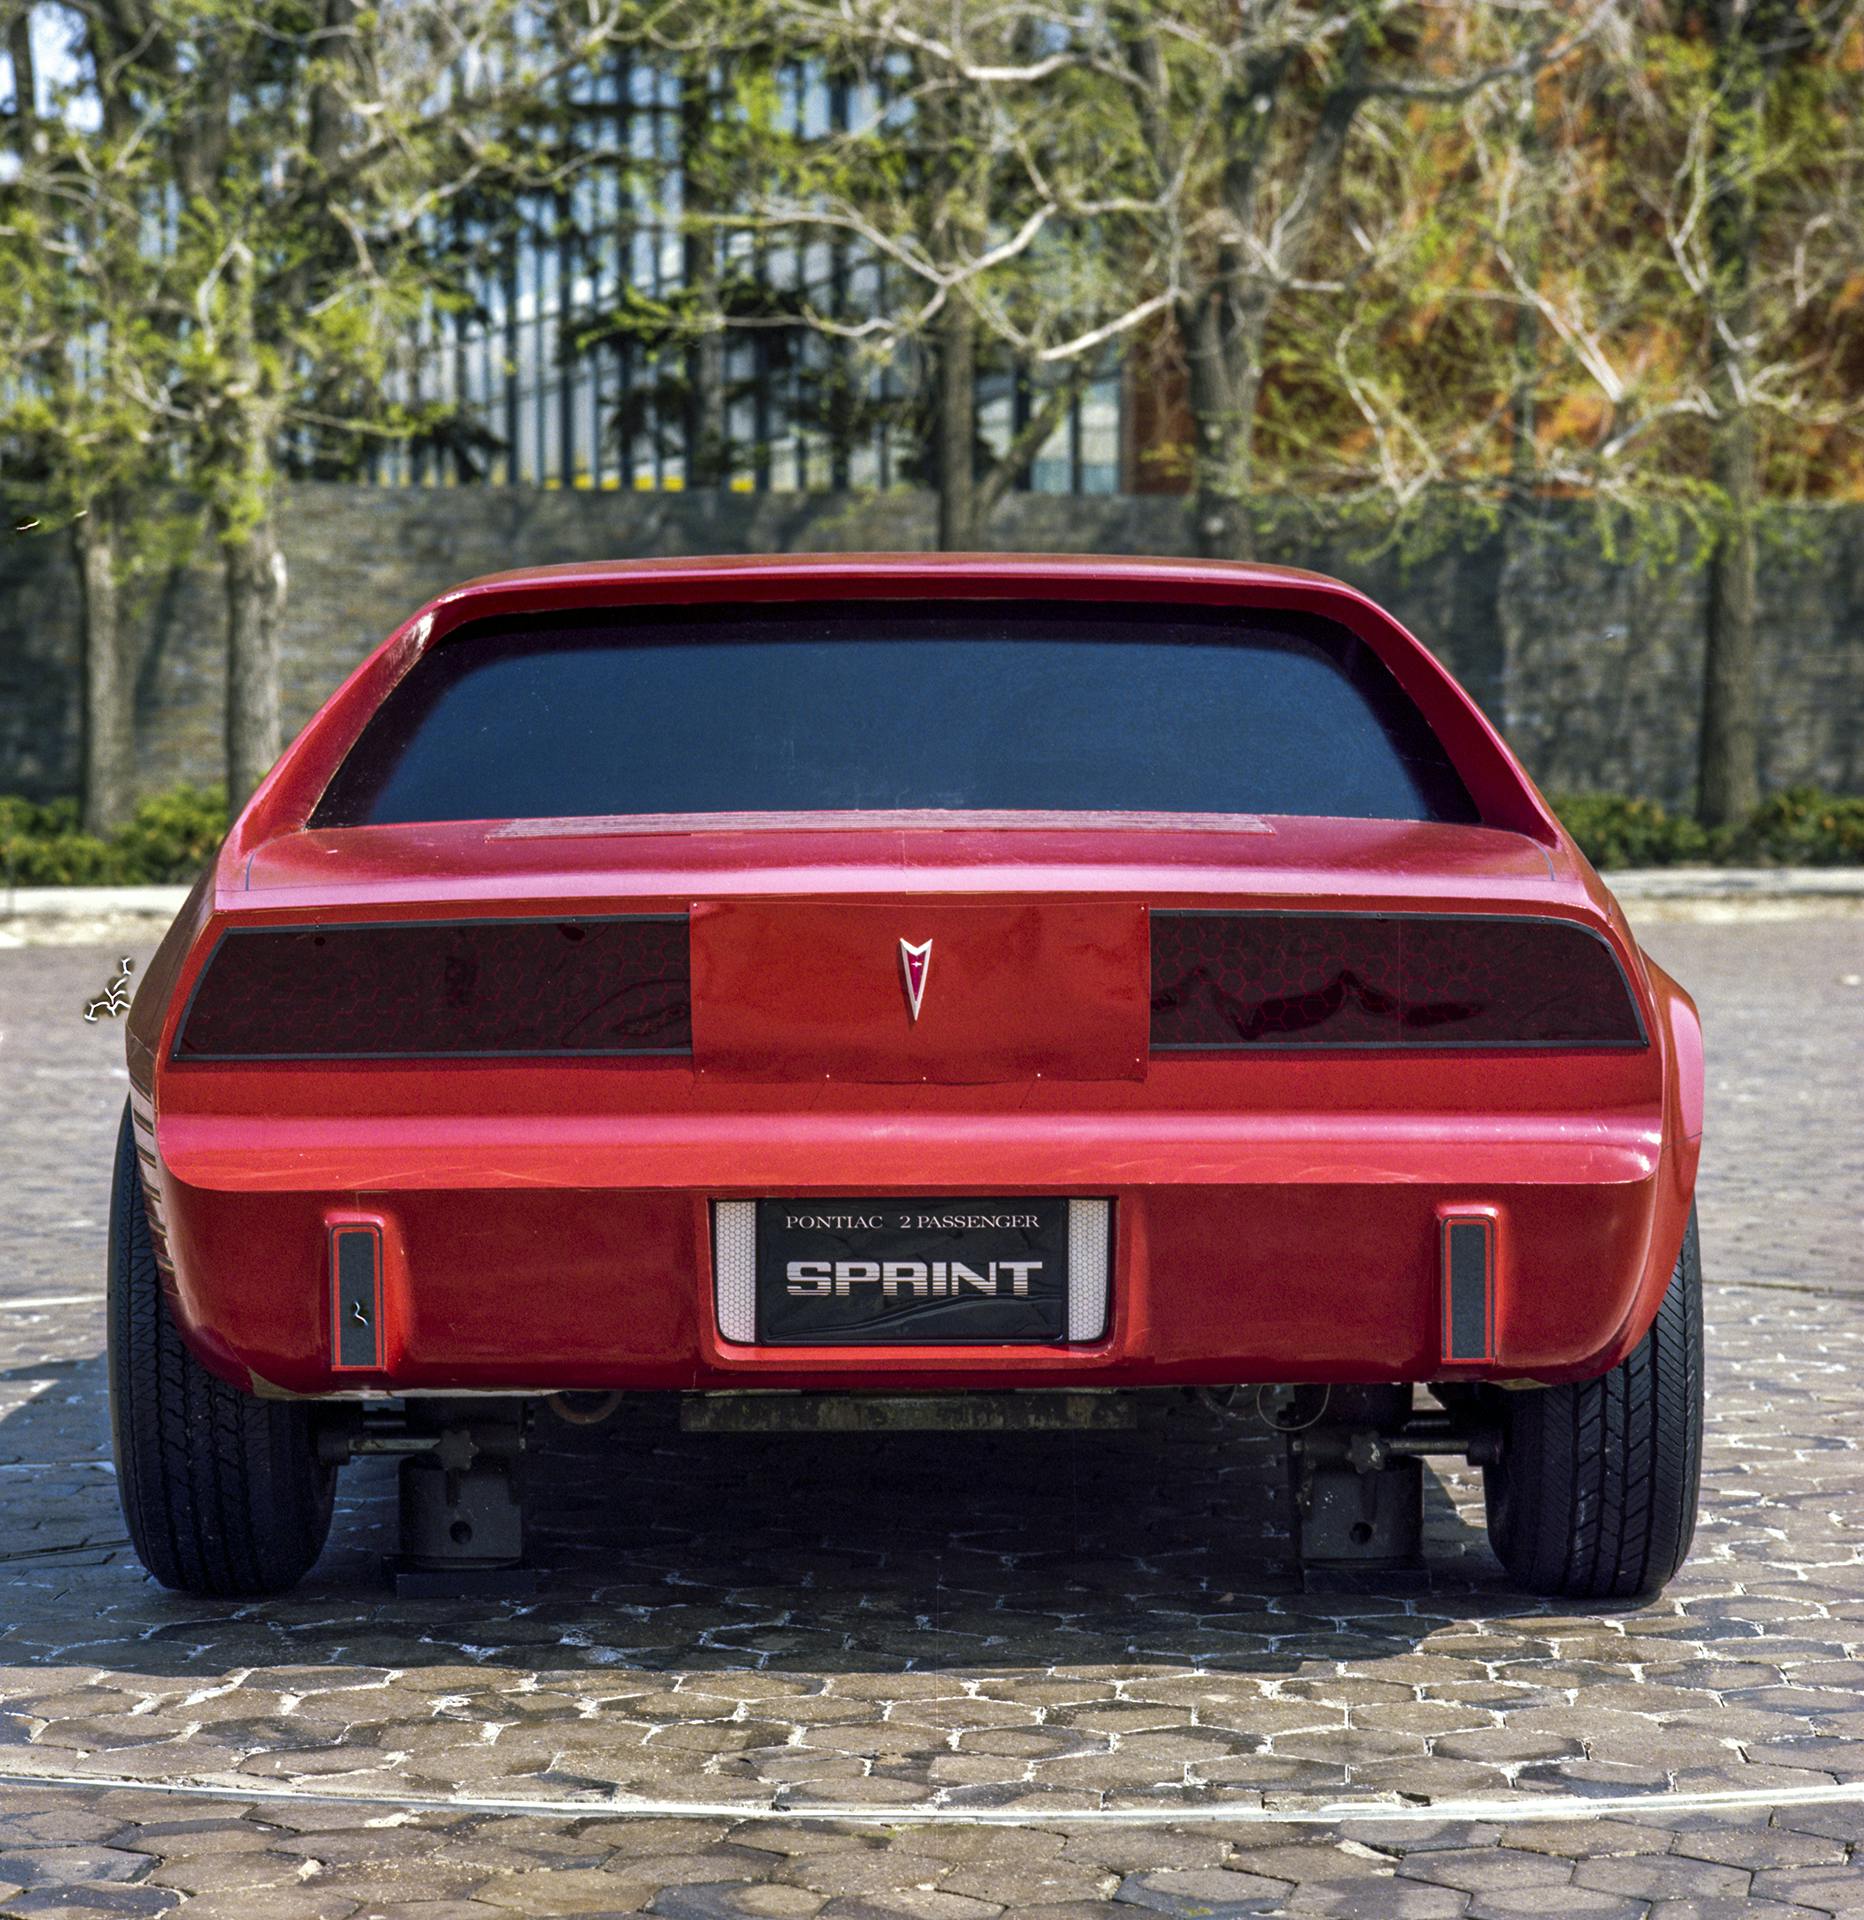 Pontiac P body Fiero rear development